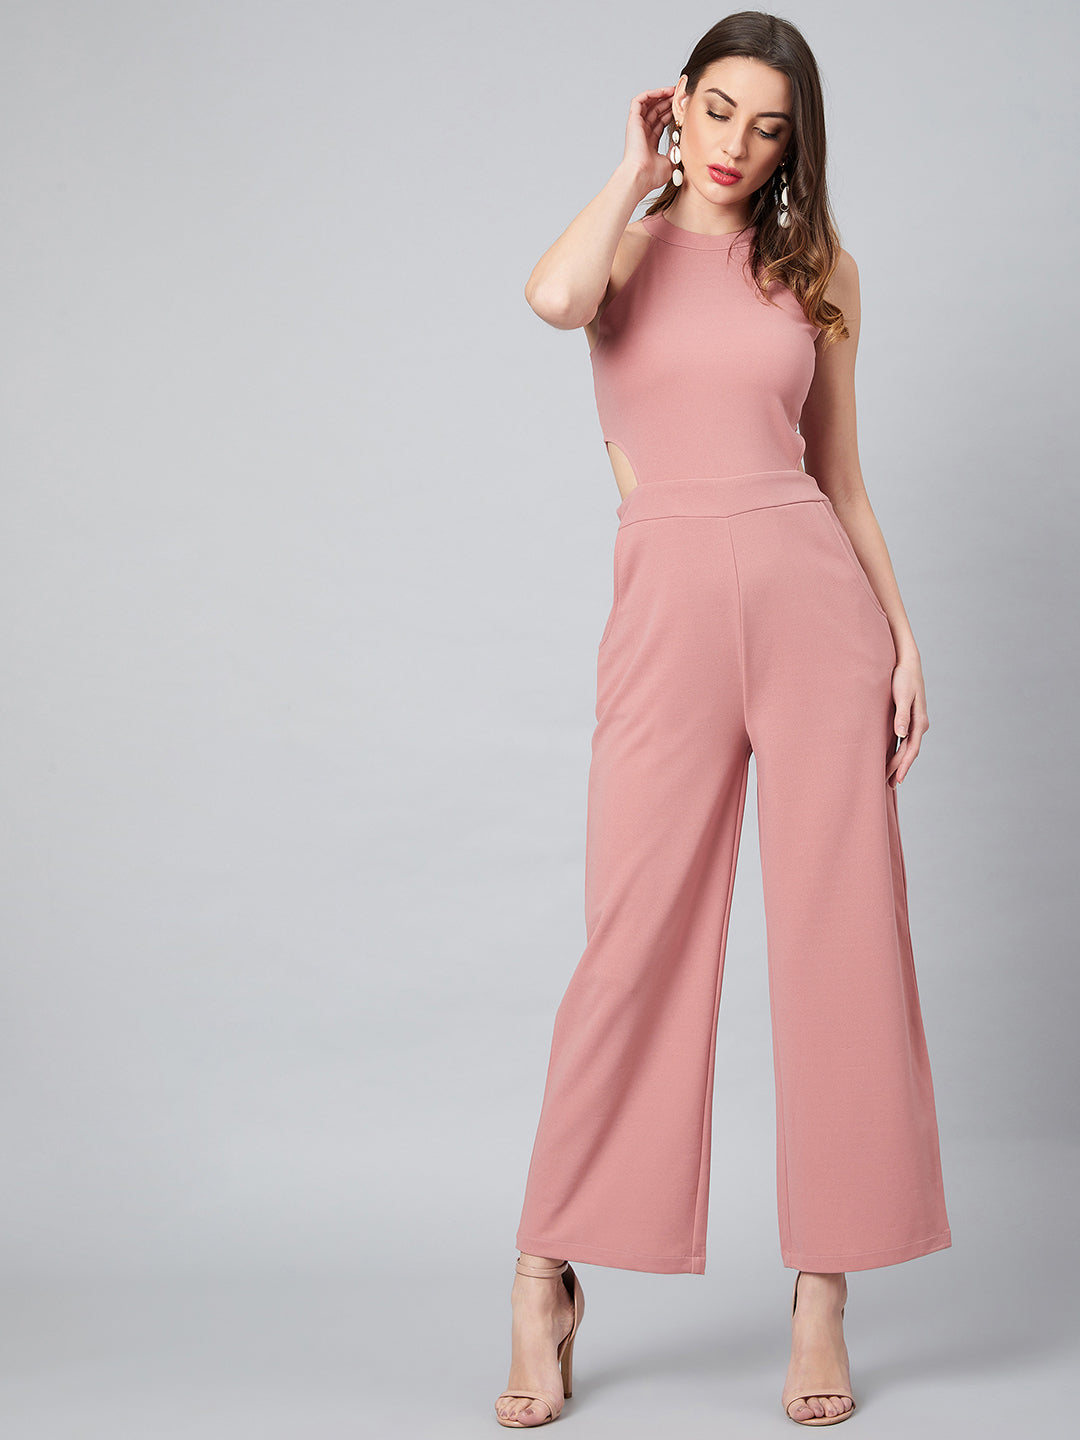 Athena Women Pink Solid Basic Jumpsuit - Athena Lifestyle